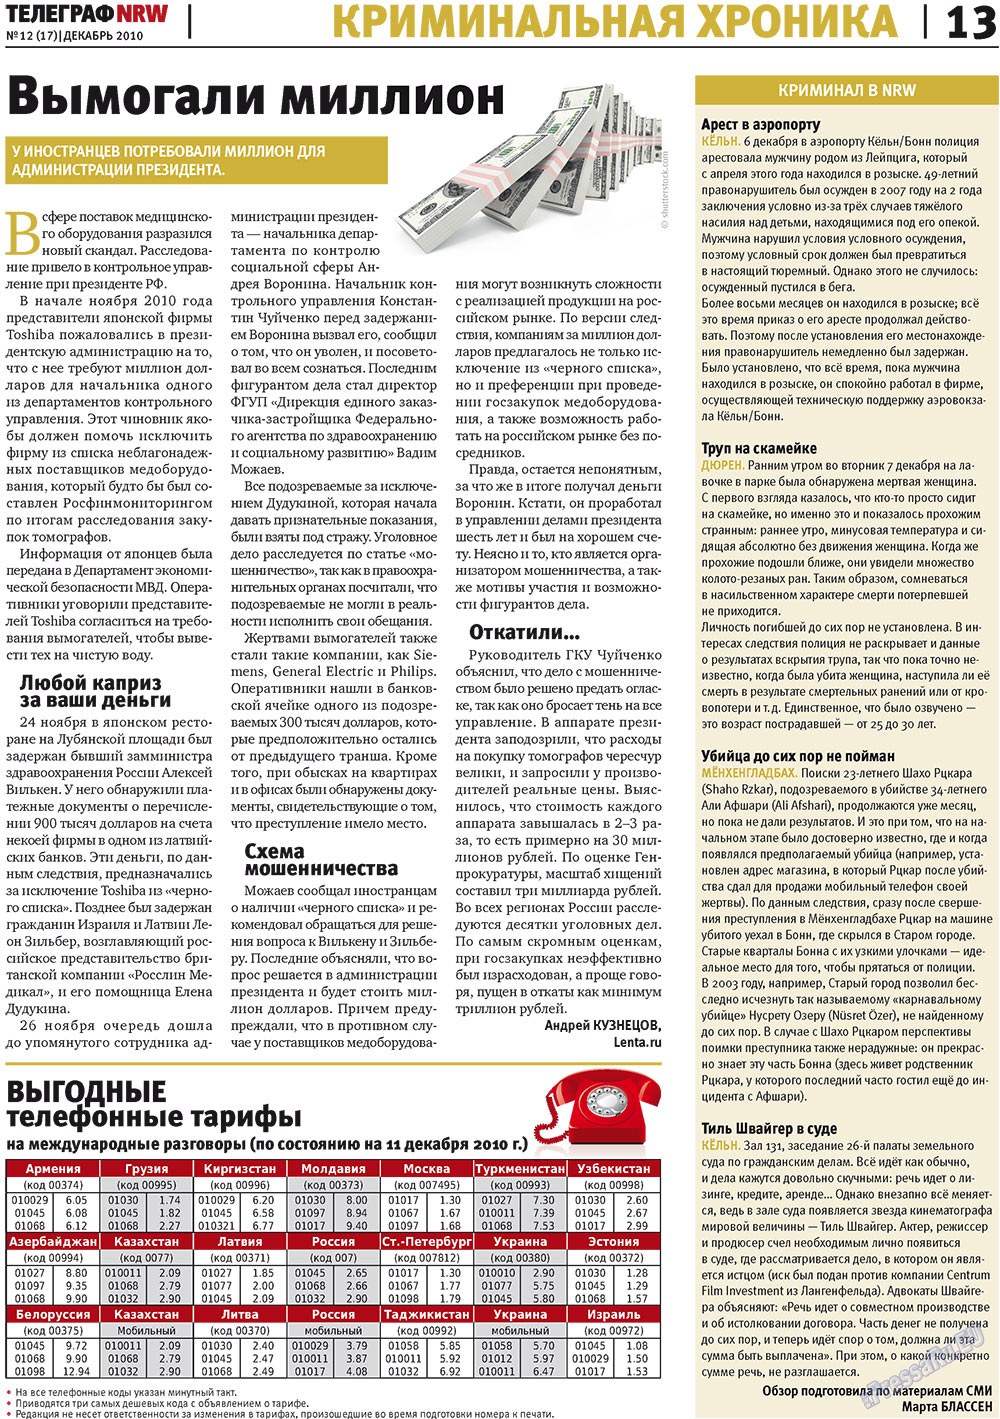 Телеграф NRW (газета). 2010 год, номер 12, стр. 13